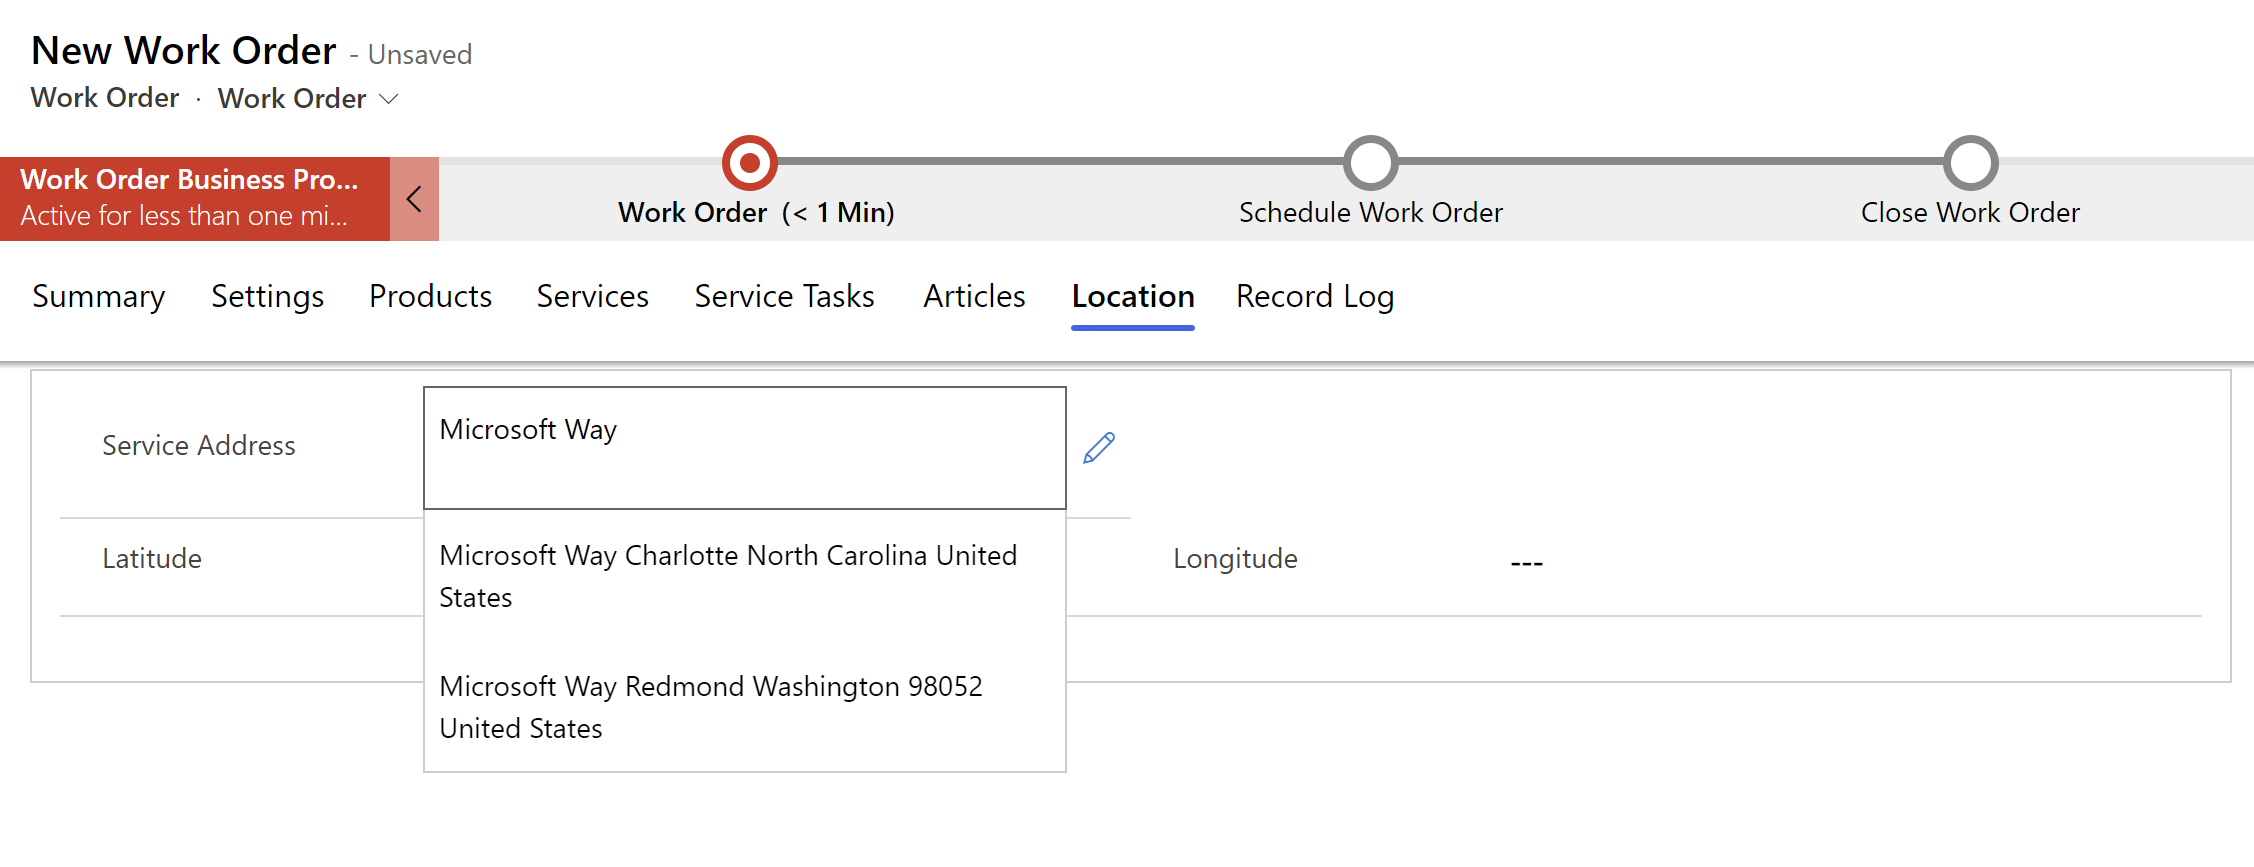 Capture d’écran d’un nouvel ordre de travail dans Field Service, montrant des suggestions d’adresses dans un menu déroulant.